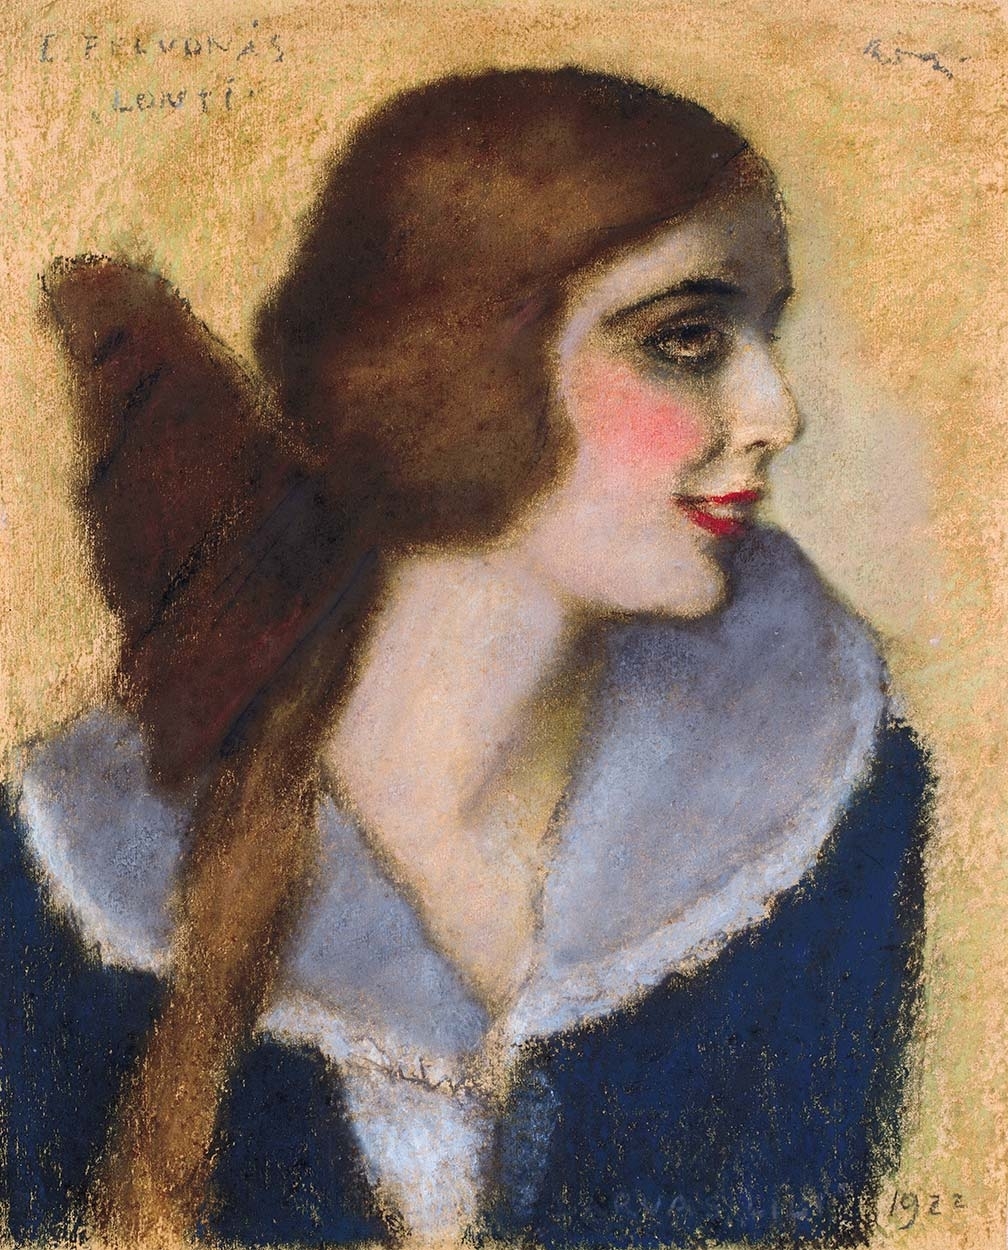 Rippl-Rónai József (1861-1927) Darvas Lili arcképe Lonti szerepében, 1922